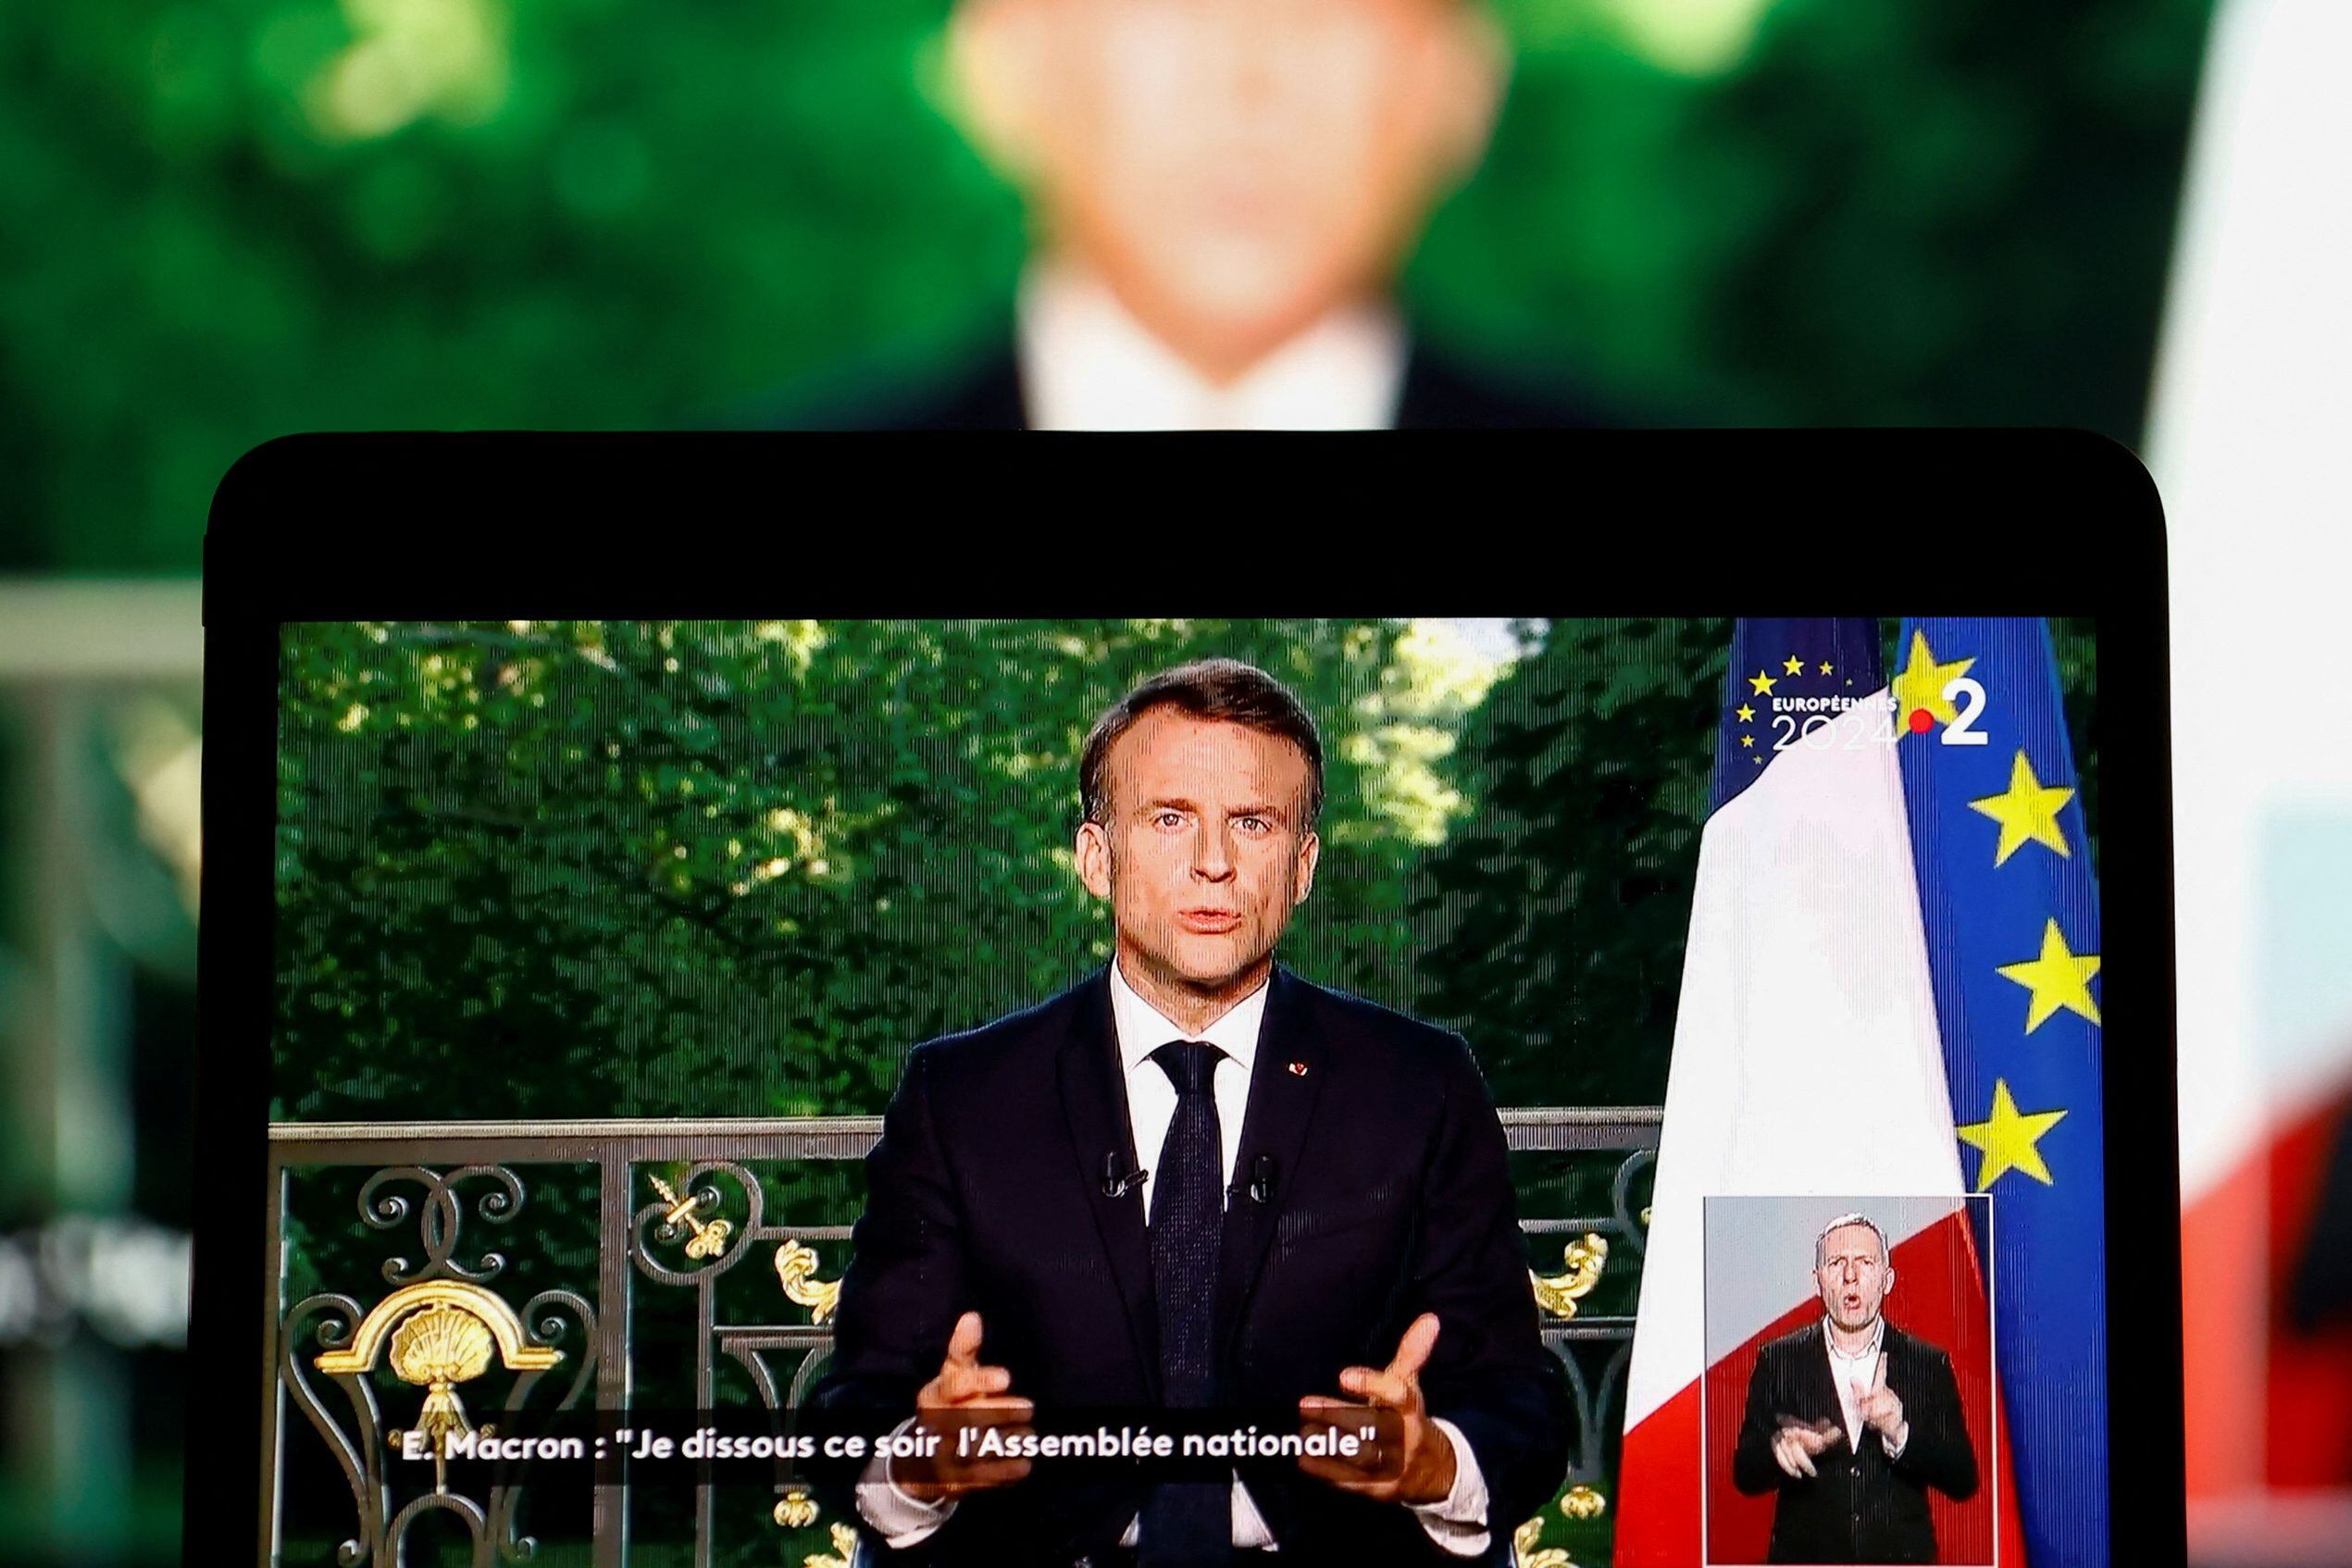 Tras la derrota en los comicios europeos, el presidente Emmanuel Macron disolvió la Asamblea Nacional y convocó a elecciones legislativas anticipadas en Francia (REUTERS/Christian Hartmann)